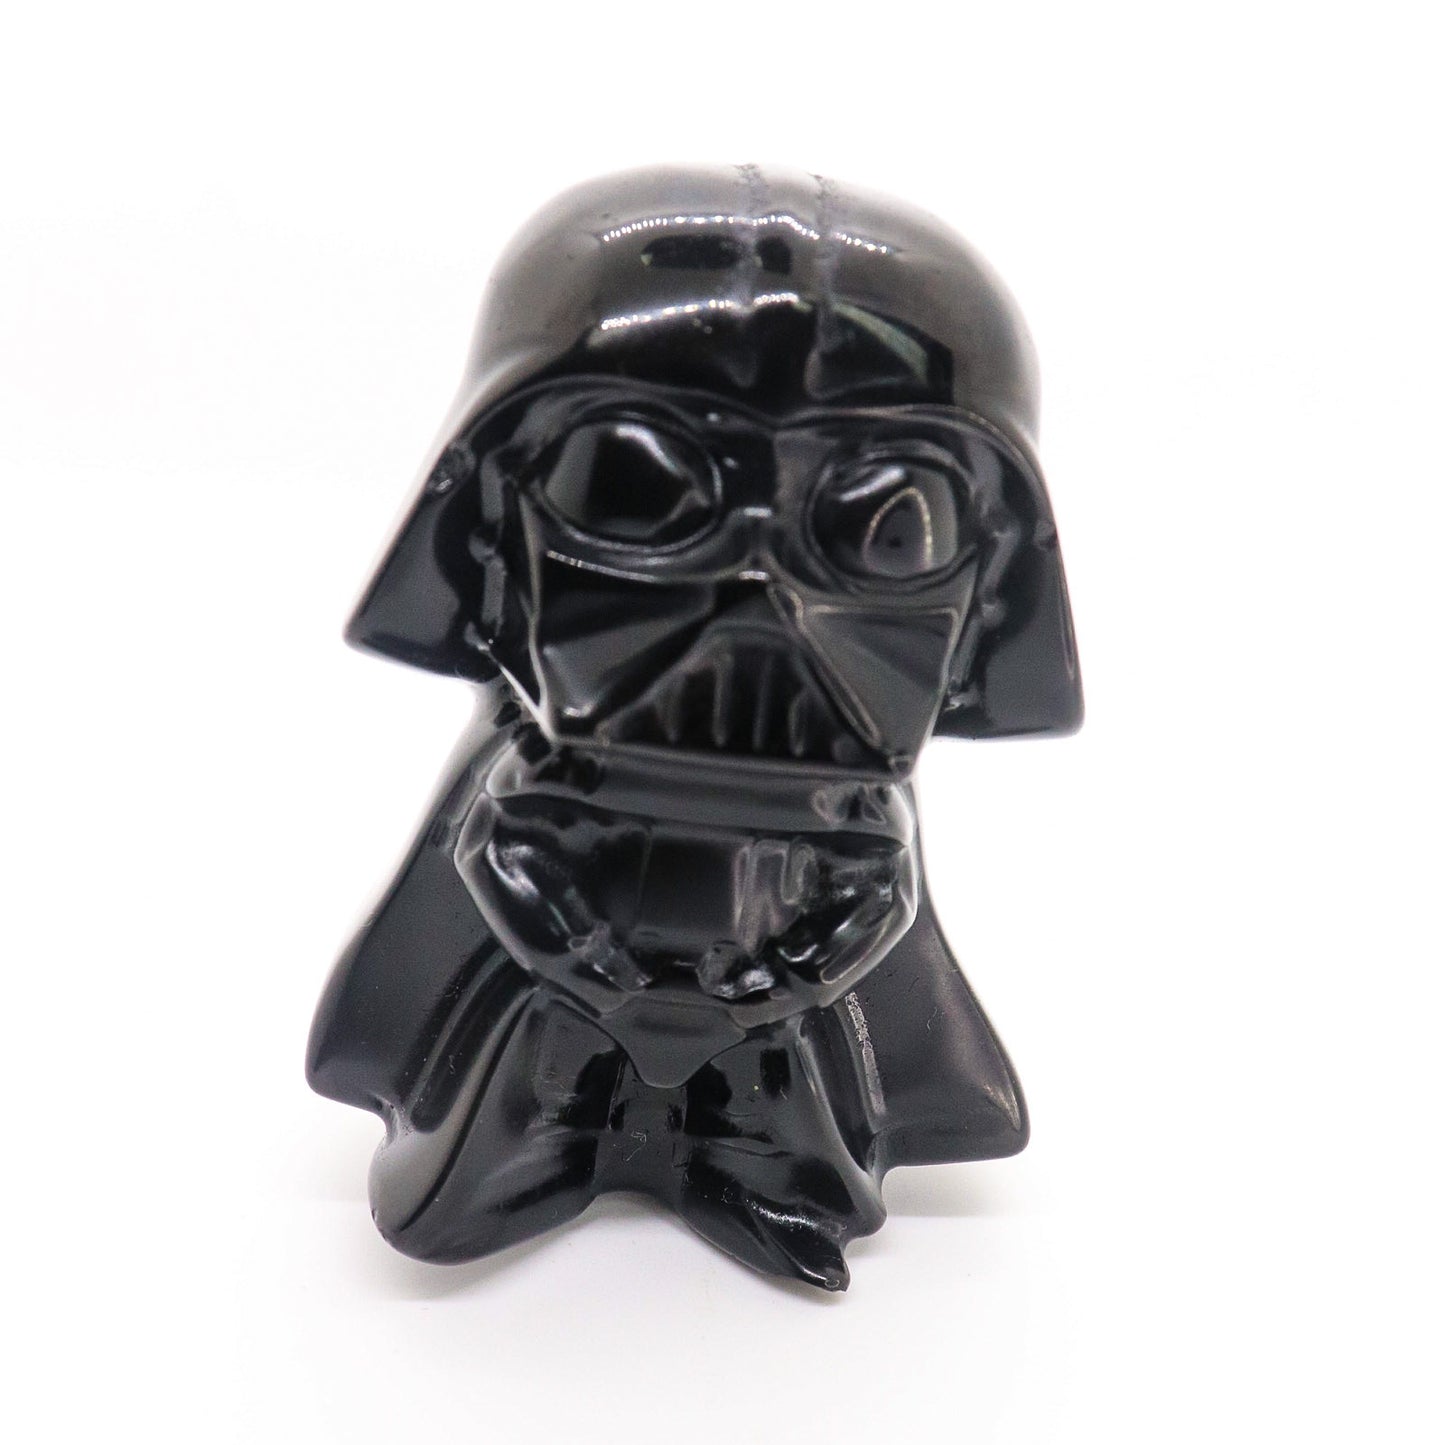 Obsidian Darth Vader and Baby Yoda